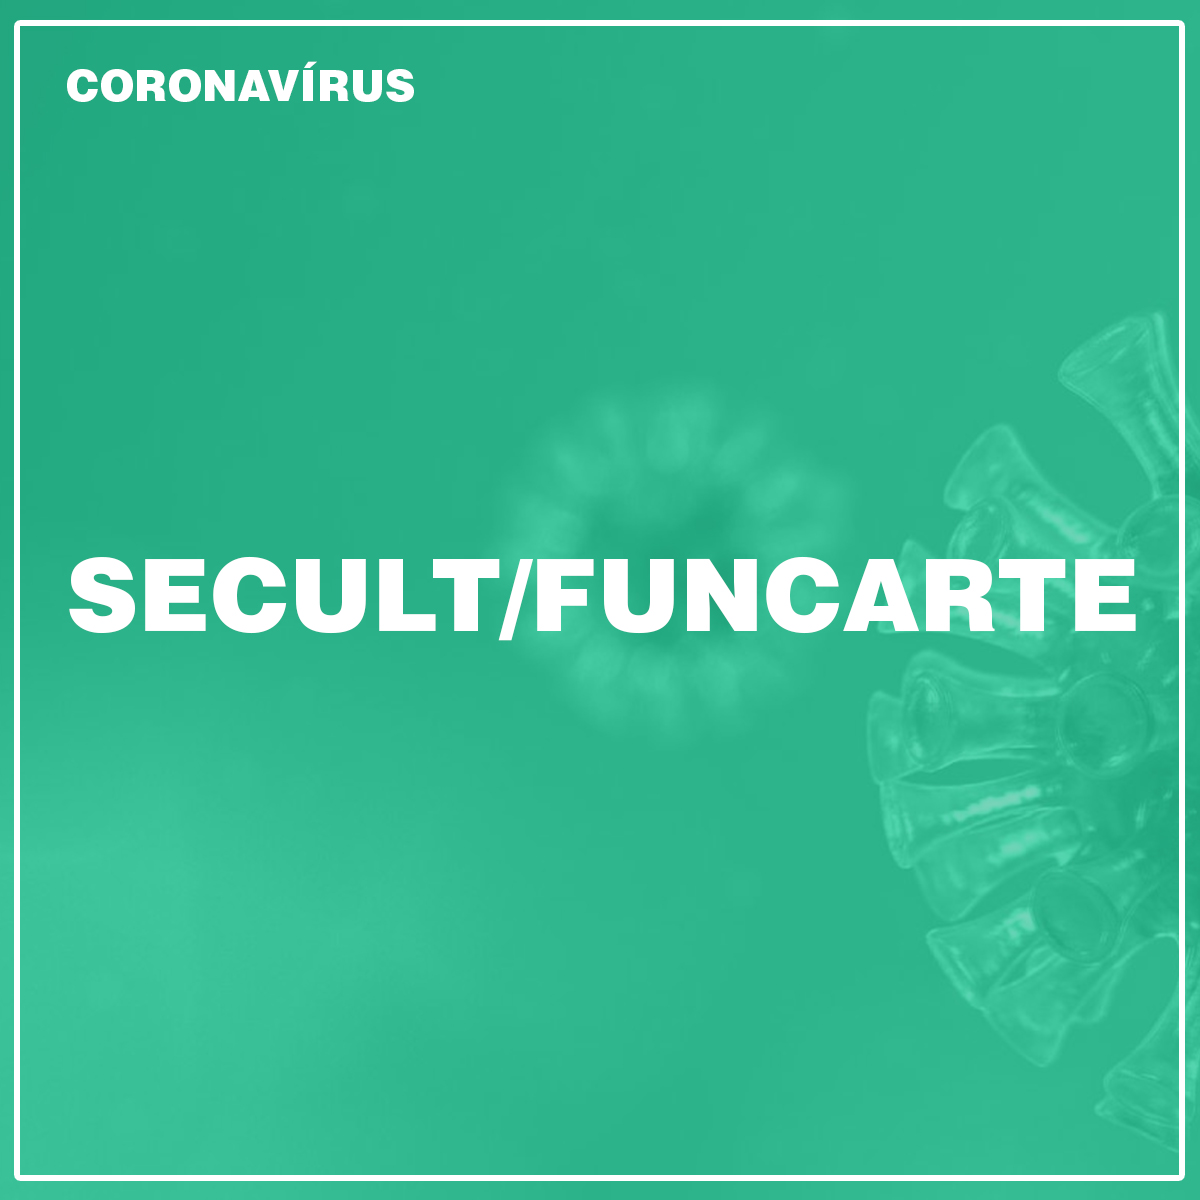 SECULT/FUNCARTE | CORONAVÍRUS